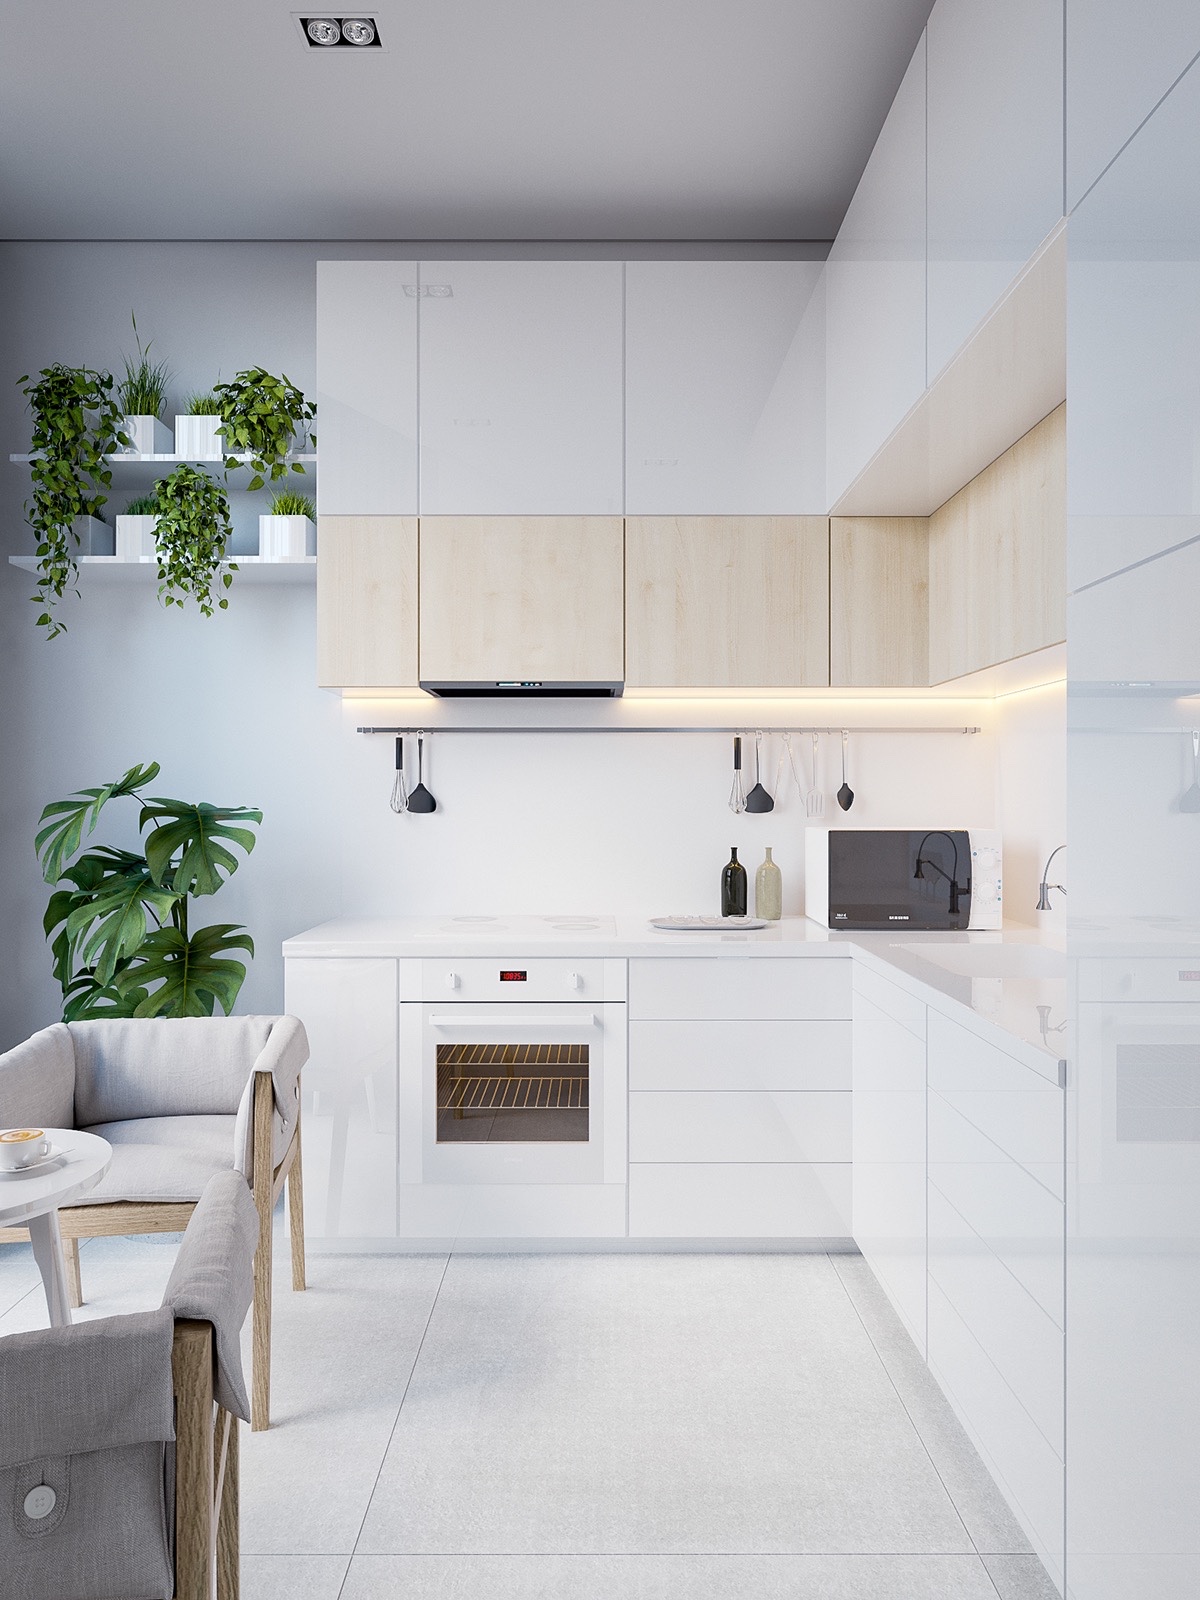 کابینت های سفید در طراحی داخلی آشپزخانه به سبک مینیمال